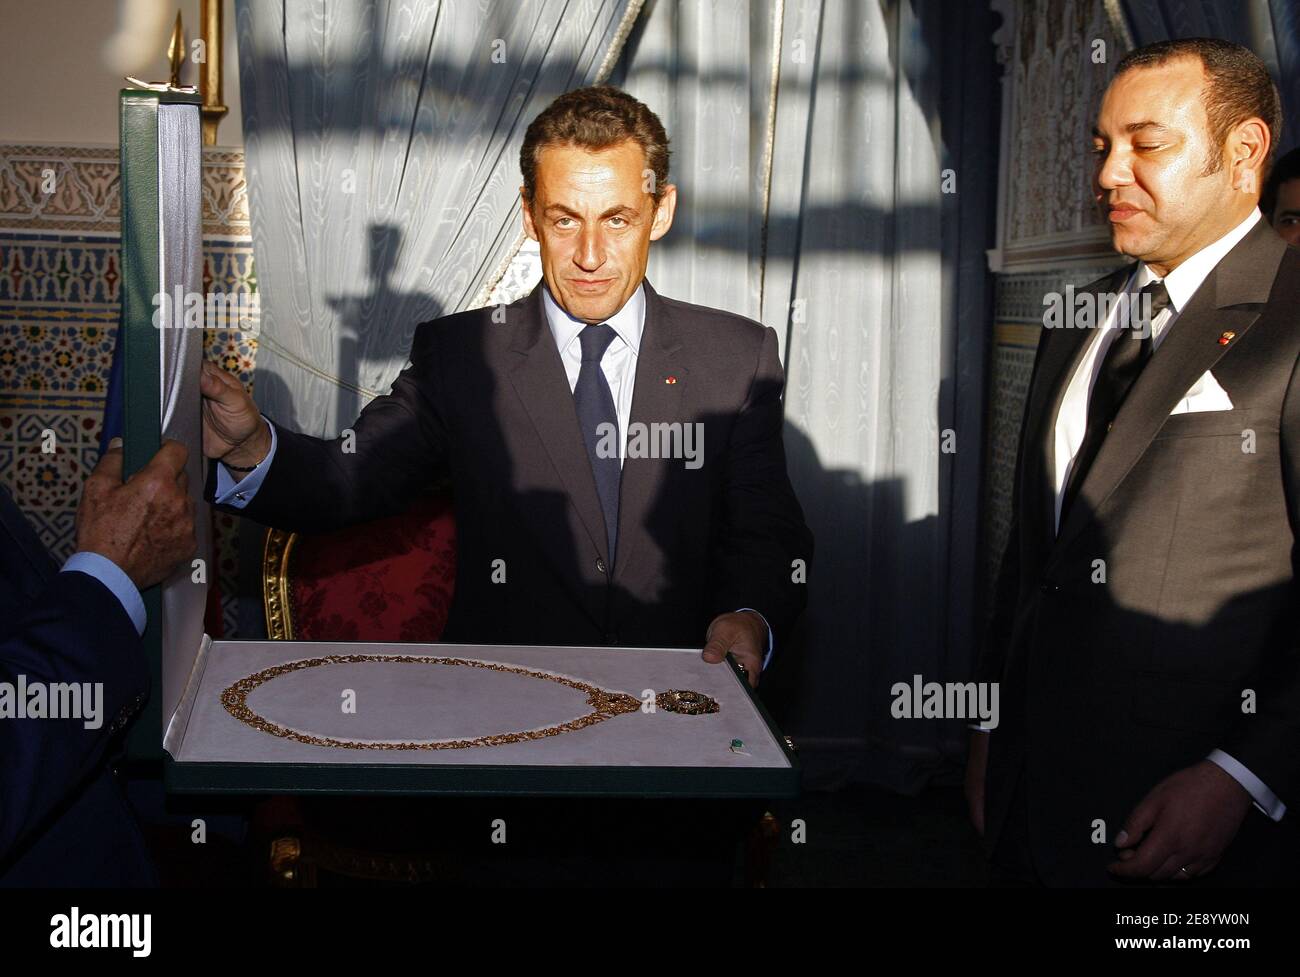 Le roi Mohammed VI du Maroc remet le cadeau de Wissan Mohammad au président français Nicolas Sarkozy lors d'une réception au palais royal de Marrakech, au Maroc, le 22 octobre 2007. Photo de Ludovic/Pool/ABACAPRESS.COM Banque D'Images